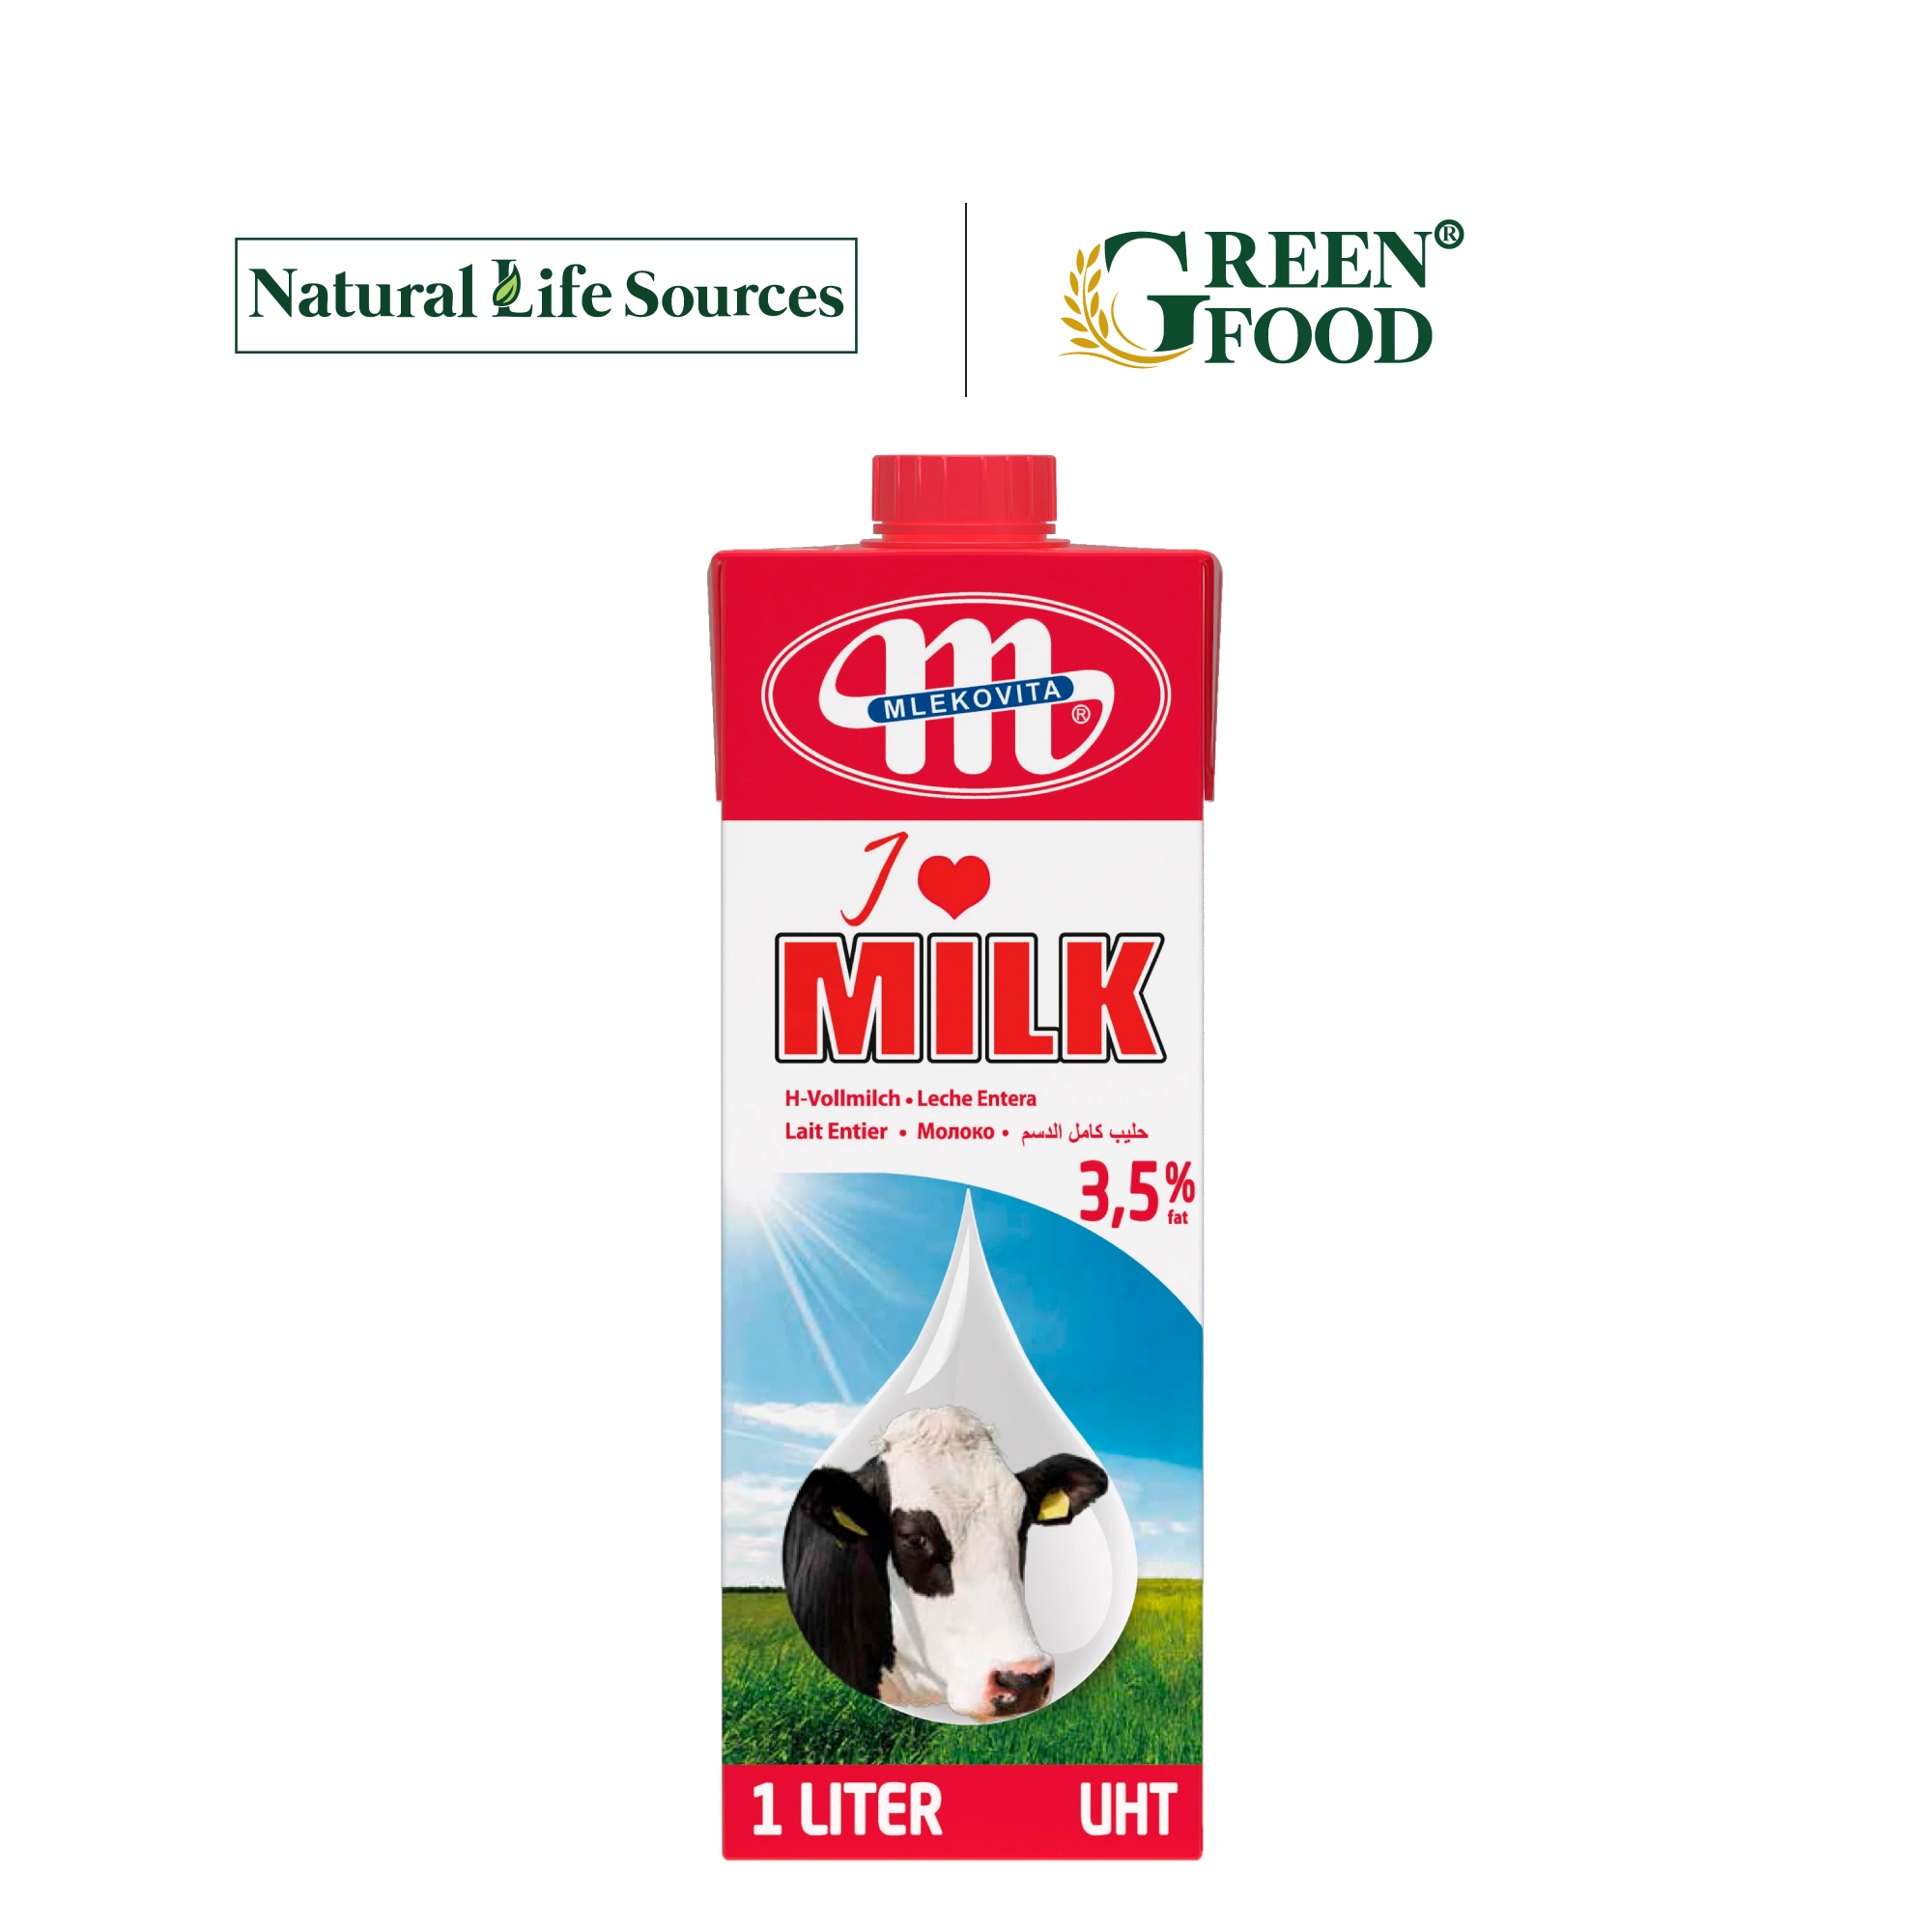 Sữa tươi tiệt trùng nguyên kem không đường Mlekovita - Độ béo 3.5% | Hộp 1L, nhập khẩu trực tiếp từ Ba Lan